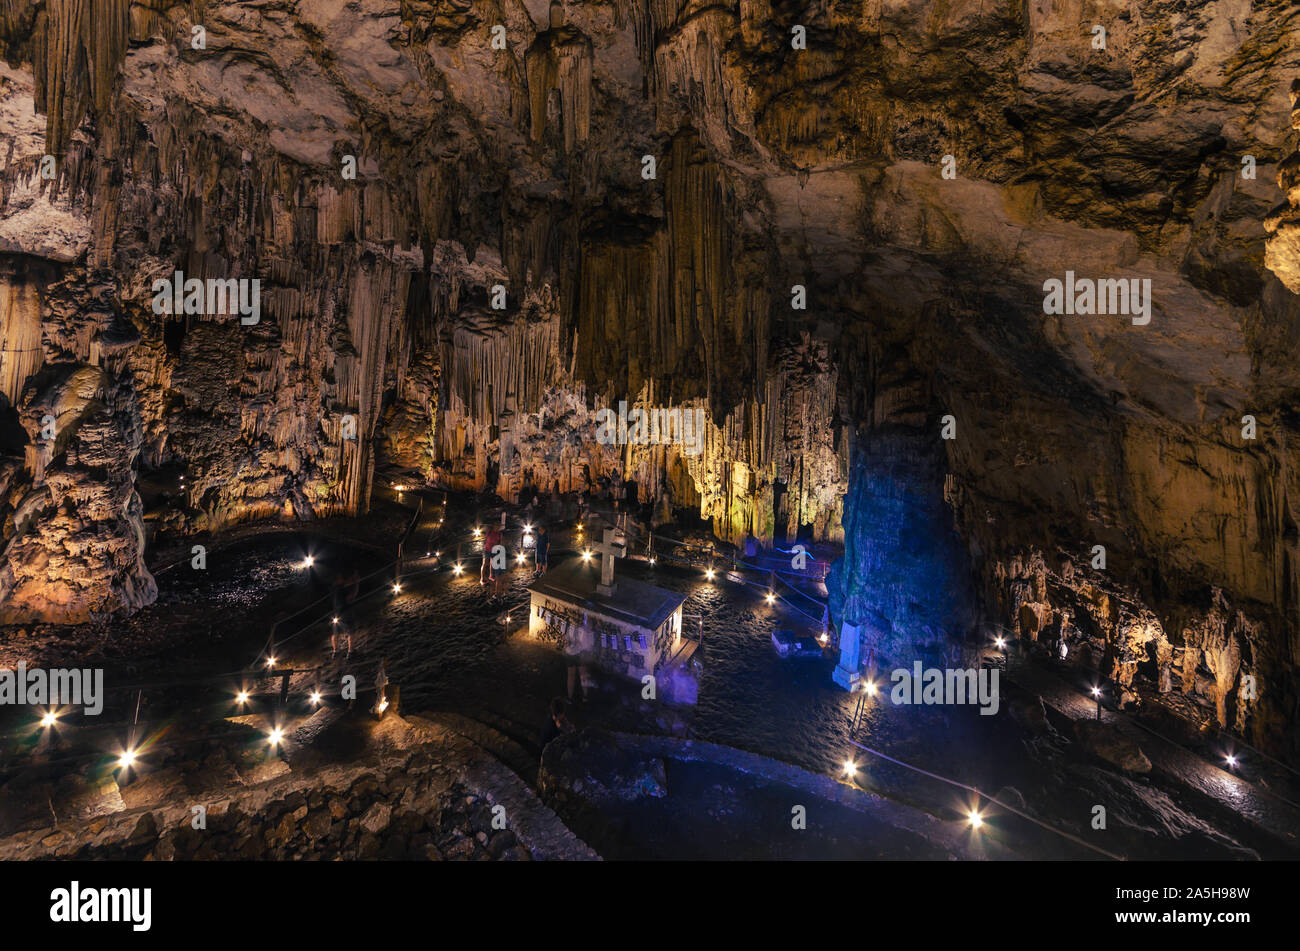 Melidoni-höhle, eine erstaunliche historische und archäologische Höhle mit dem beeindruckenden Formationen von Stalaktiten und Stalagmiten. Stockfoto